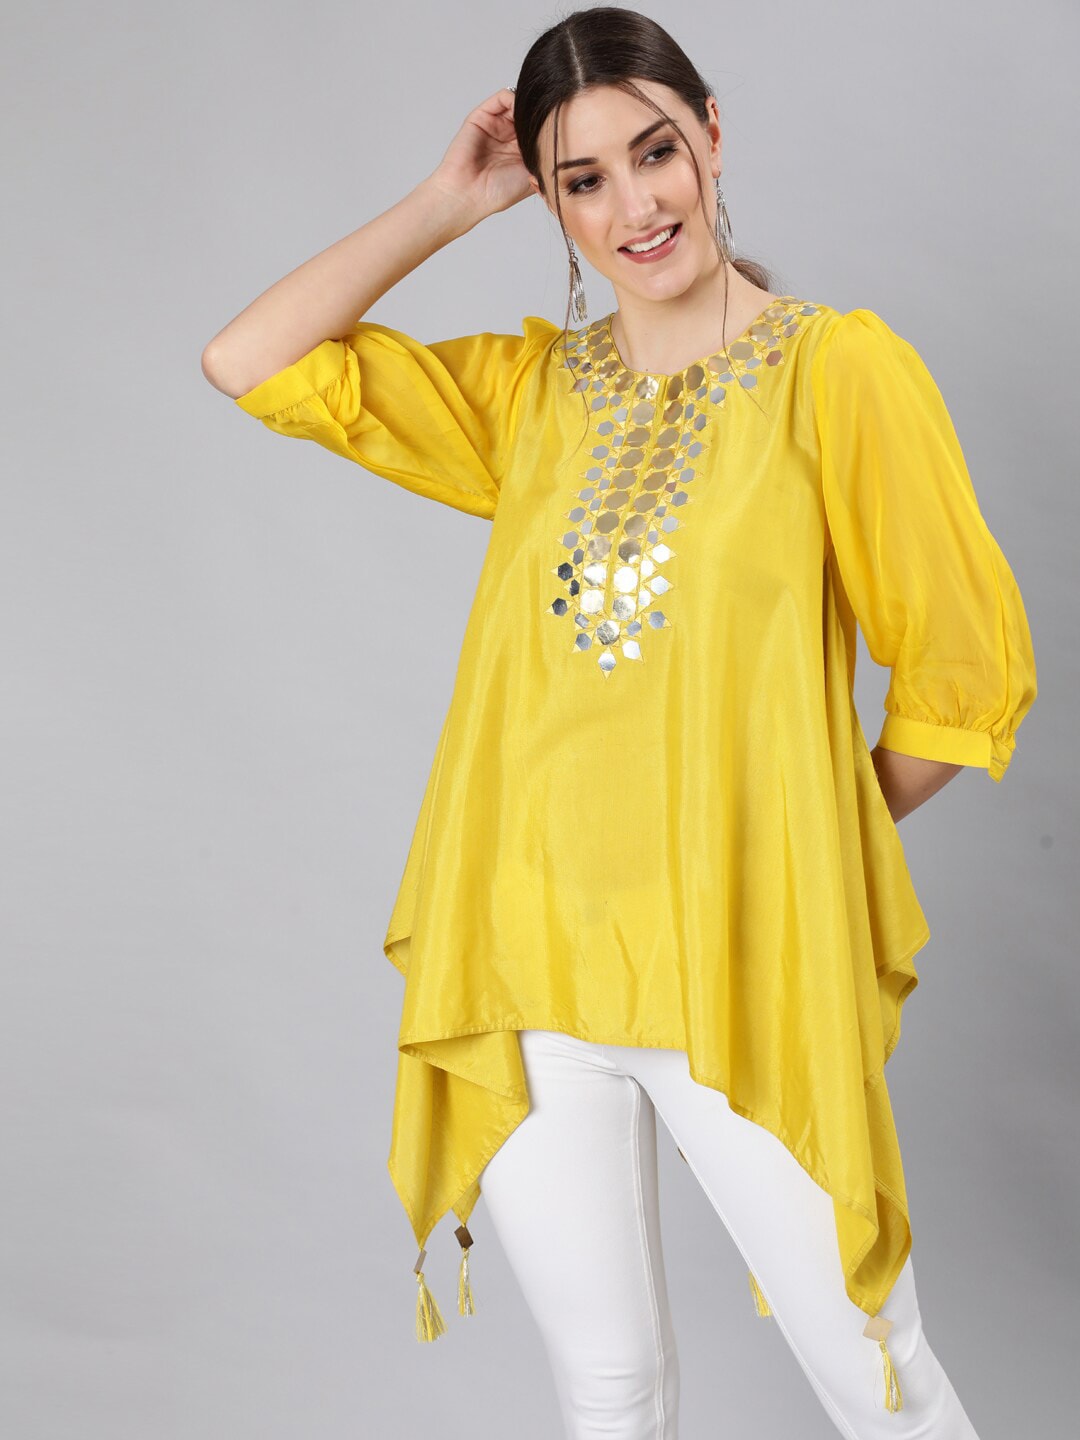 Jaipur Kurti Women Yellow Embellished High-Low Longline Top Price in India